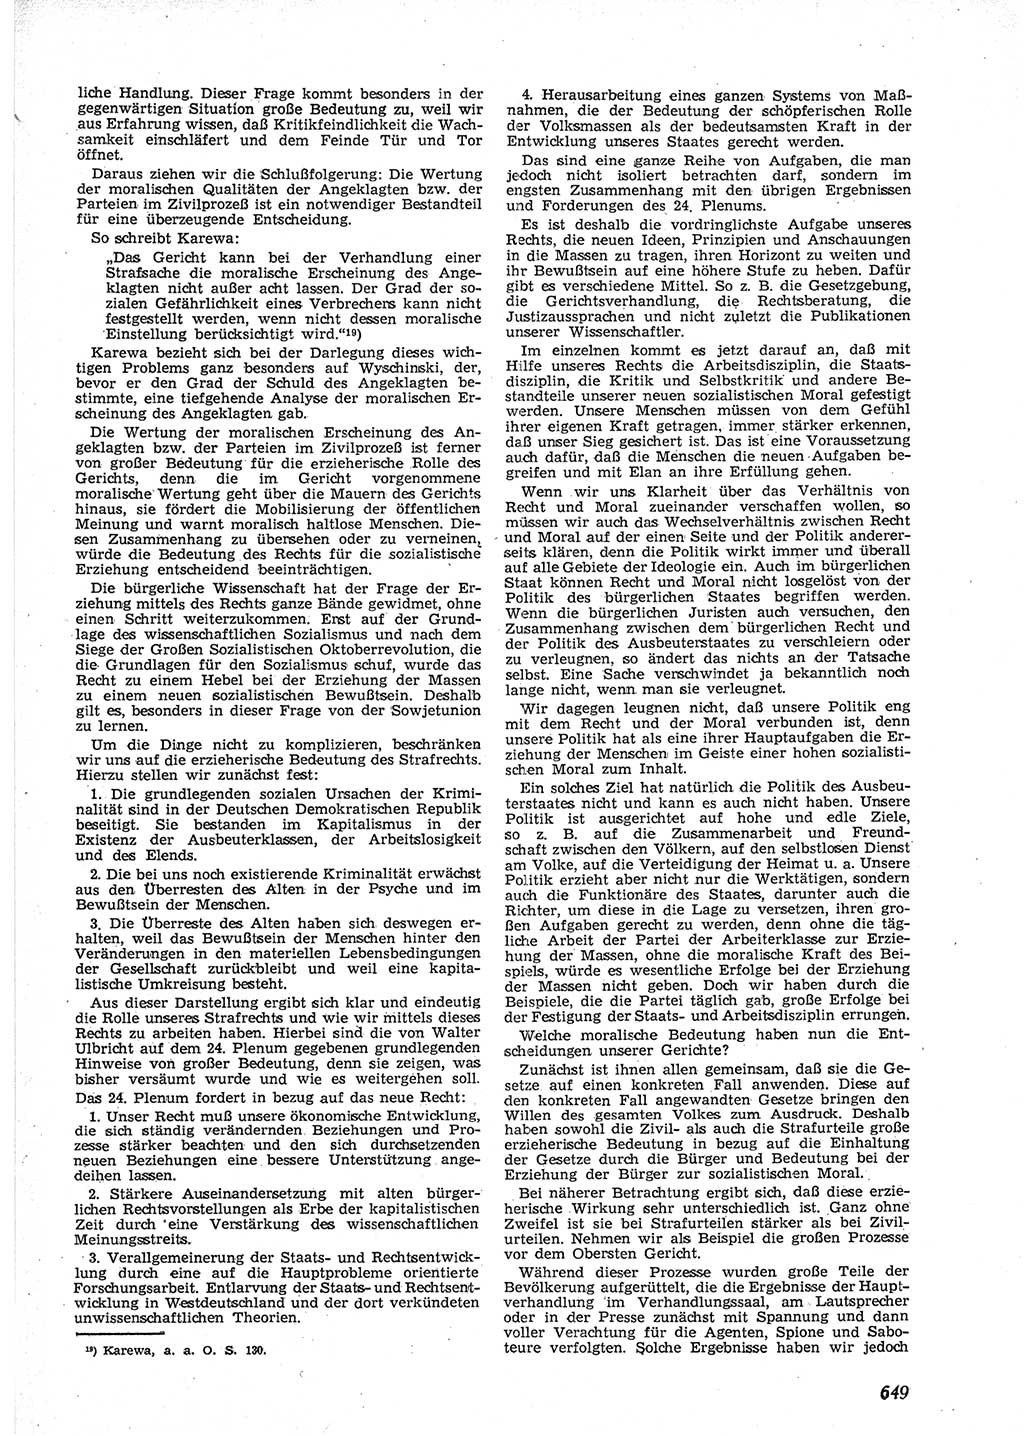 Neue Justiz (NJ), Zeitschrift für Recht und Rechtswissenschaft [Deutsche Demokratische Republik (DDR)], 9. Jahrgang 1955, Seite 649 (NJ DDR 1955, S. 649)